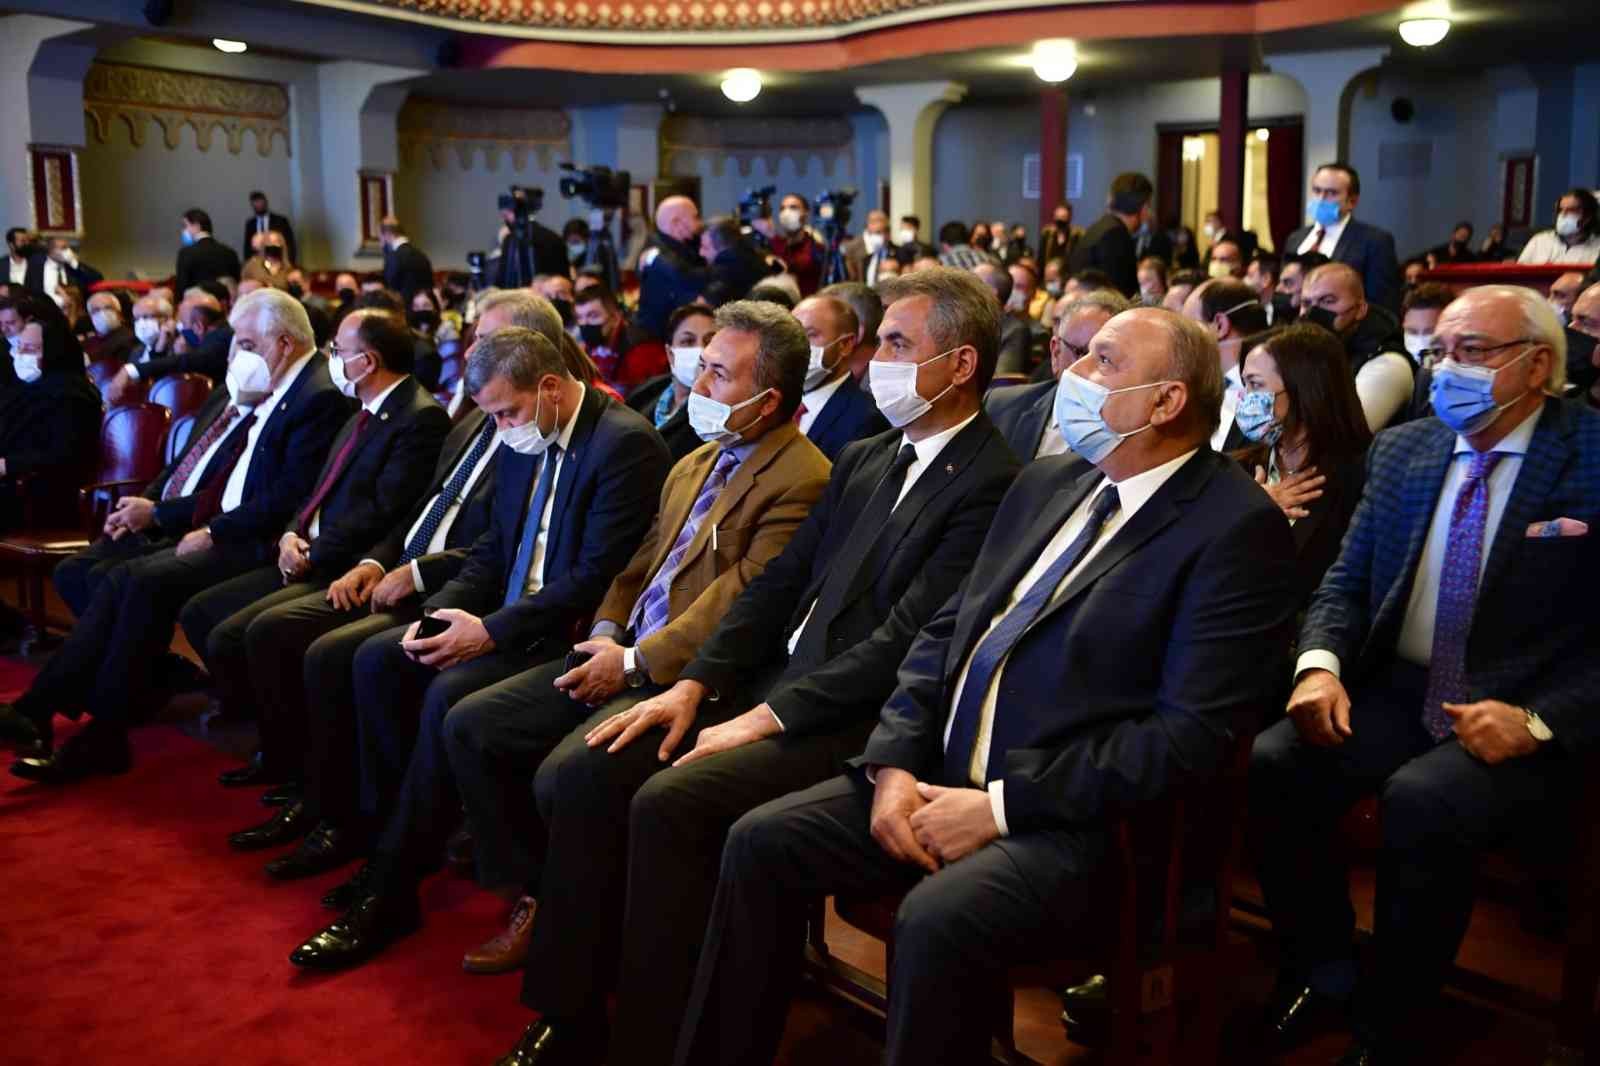 Başkan Köse, Avrasya Hizmet Ödülü’nü KKTC Cumhurbaşkanı Tatar’dan aldı #ankara